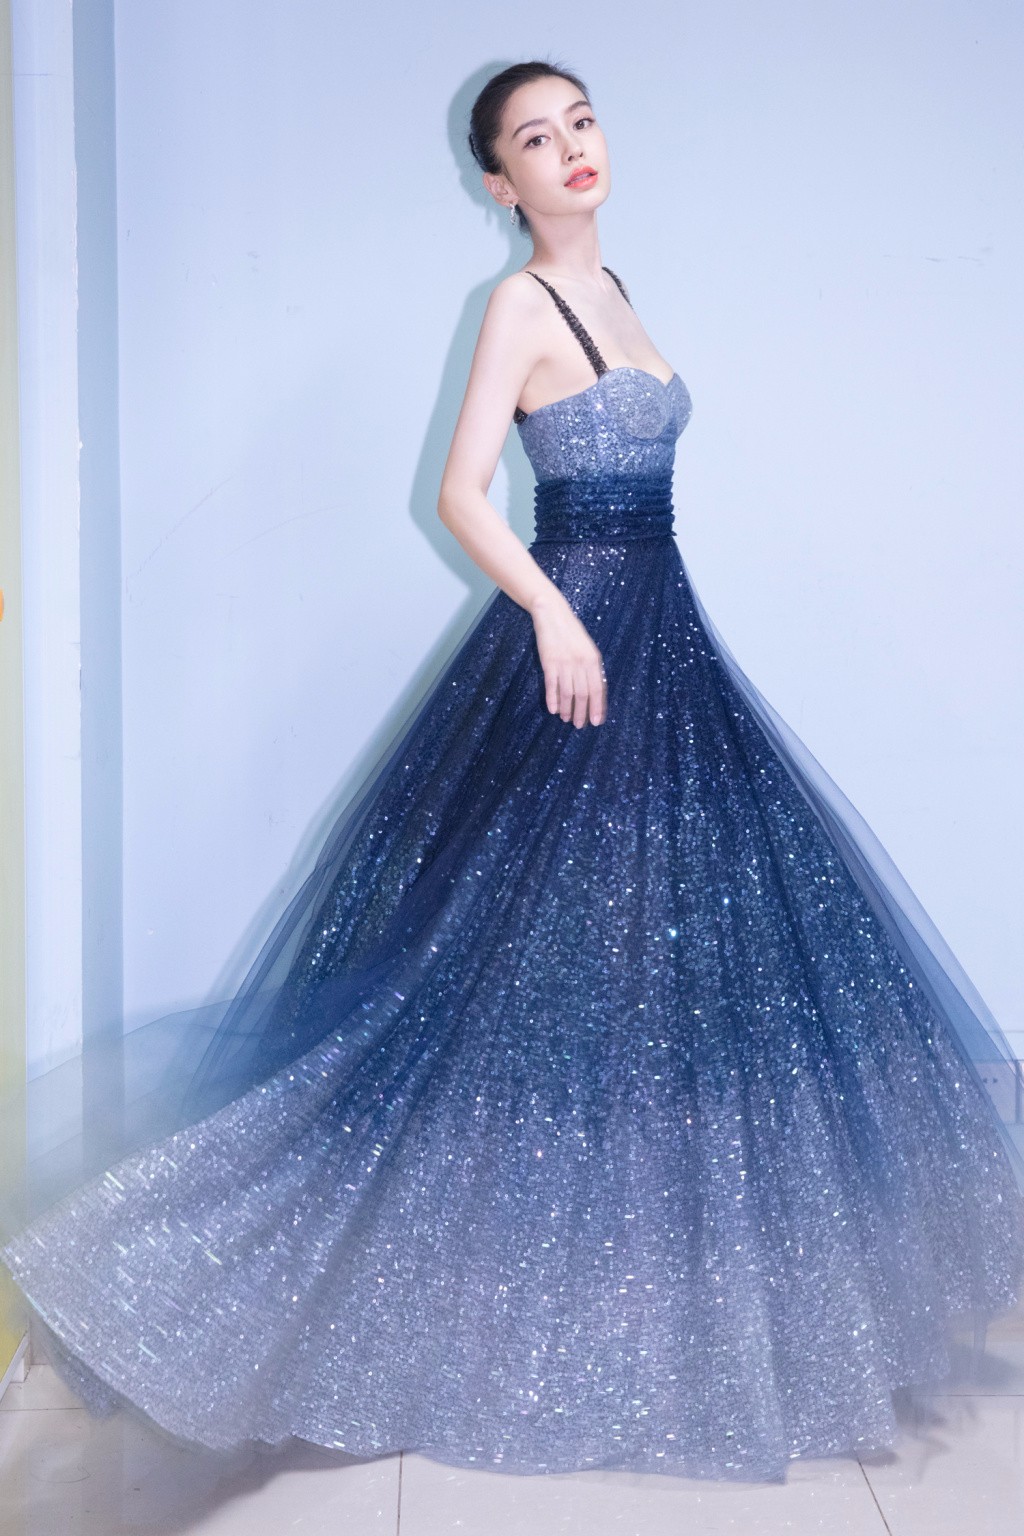 今晚微博之夜，@李冰冰 一袭蓝色礼服裙优雅亮相……|礼服裙|李冰冰|蓝色_新浪新闻